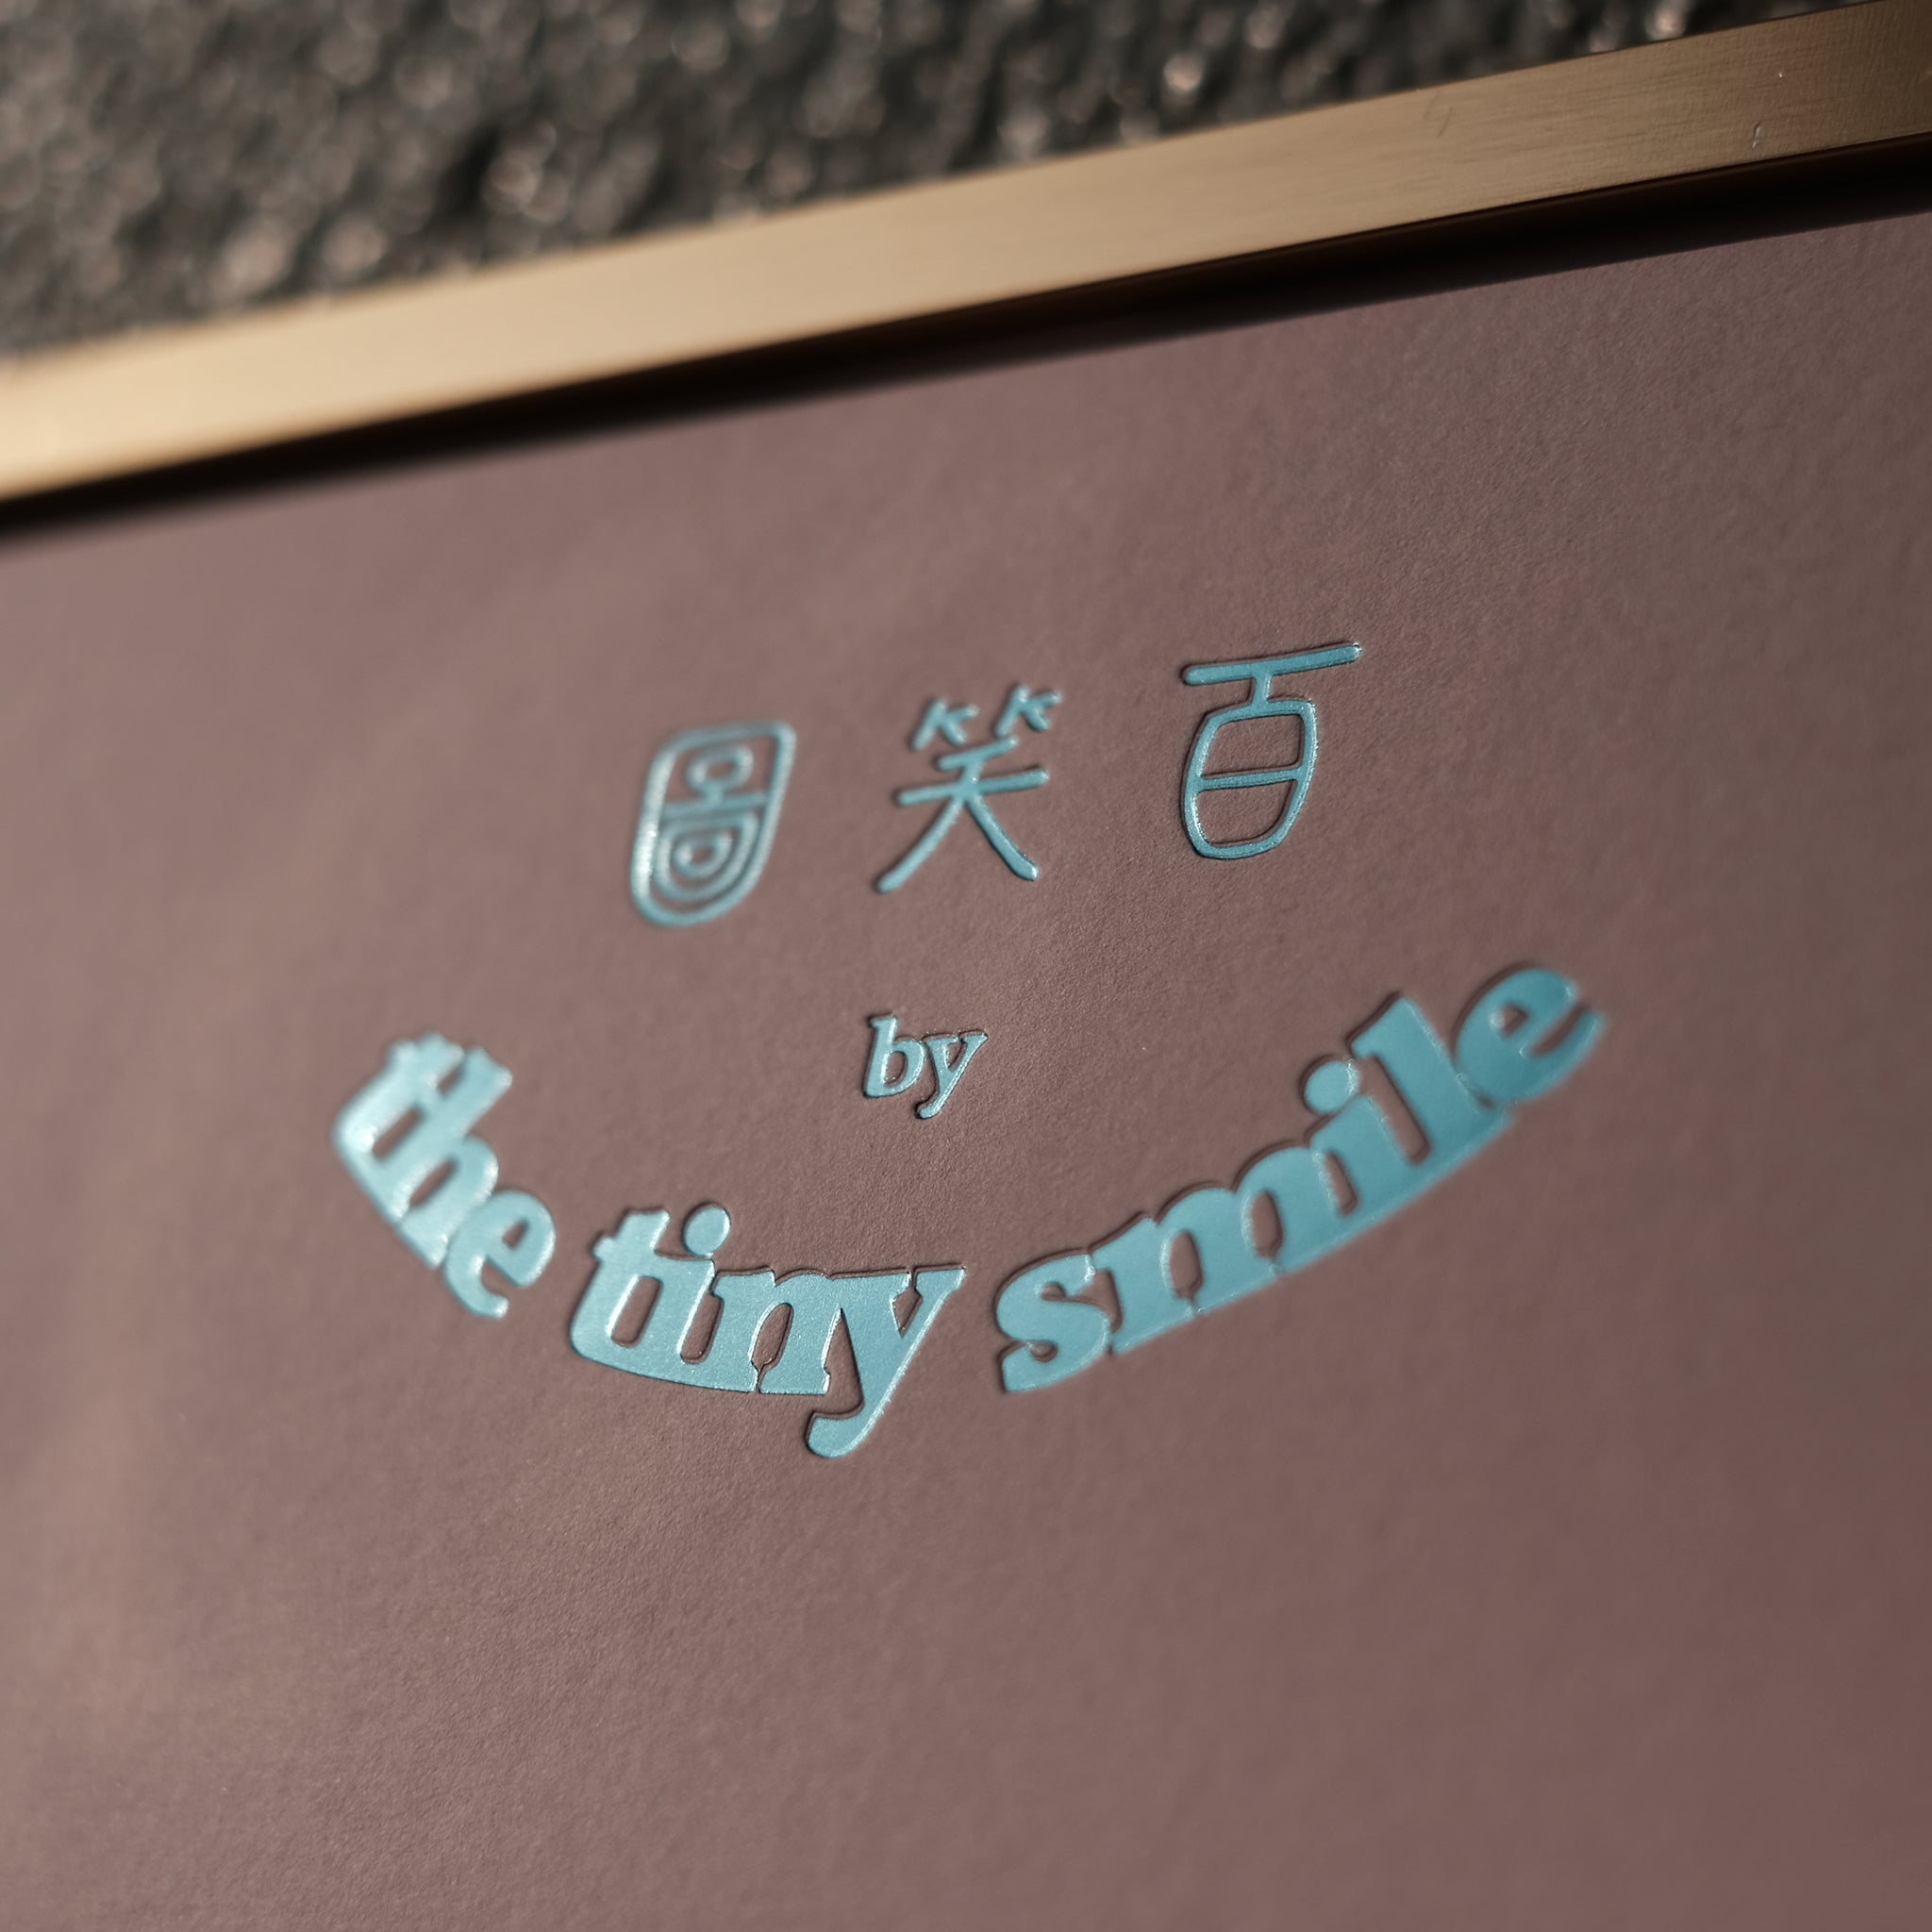 百笑圖 100 smiles tts the tiny smile wall art hong kong Art Gift Shop art prints limited edition living room 客廳 裝飾畫 創意禮物 搬家 生日 藝術禮品店